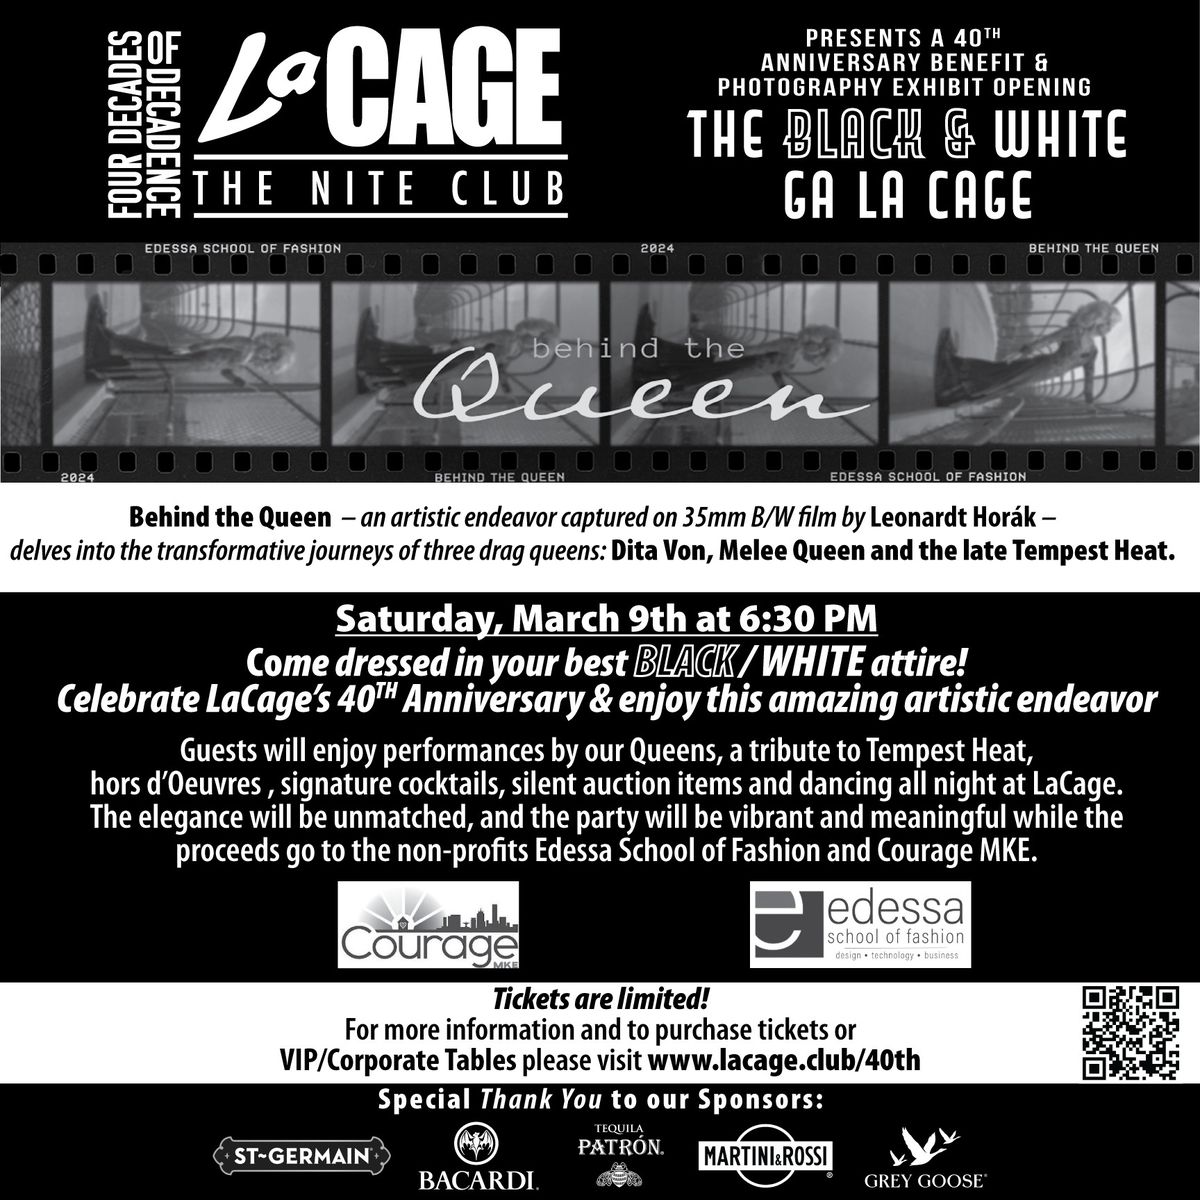 The Black & White Ga La Cage event